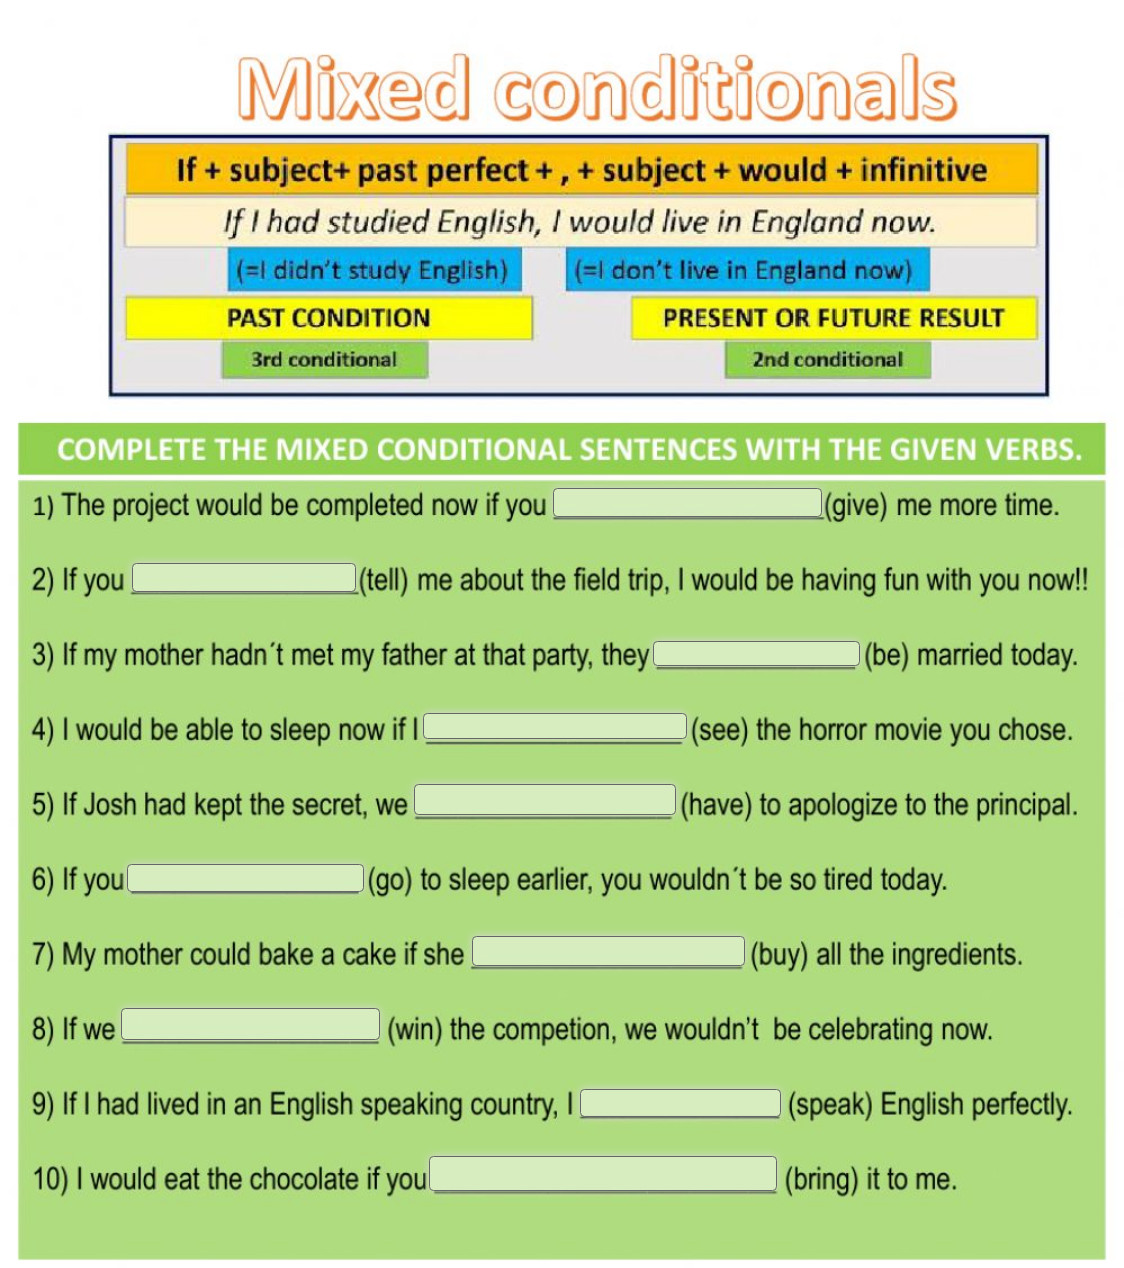 Conditionals activities. Conditionals упражнения. Mixed conditionals в английском Worksheets. Условные предложения Worksheets. Conditional sentences микс.